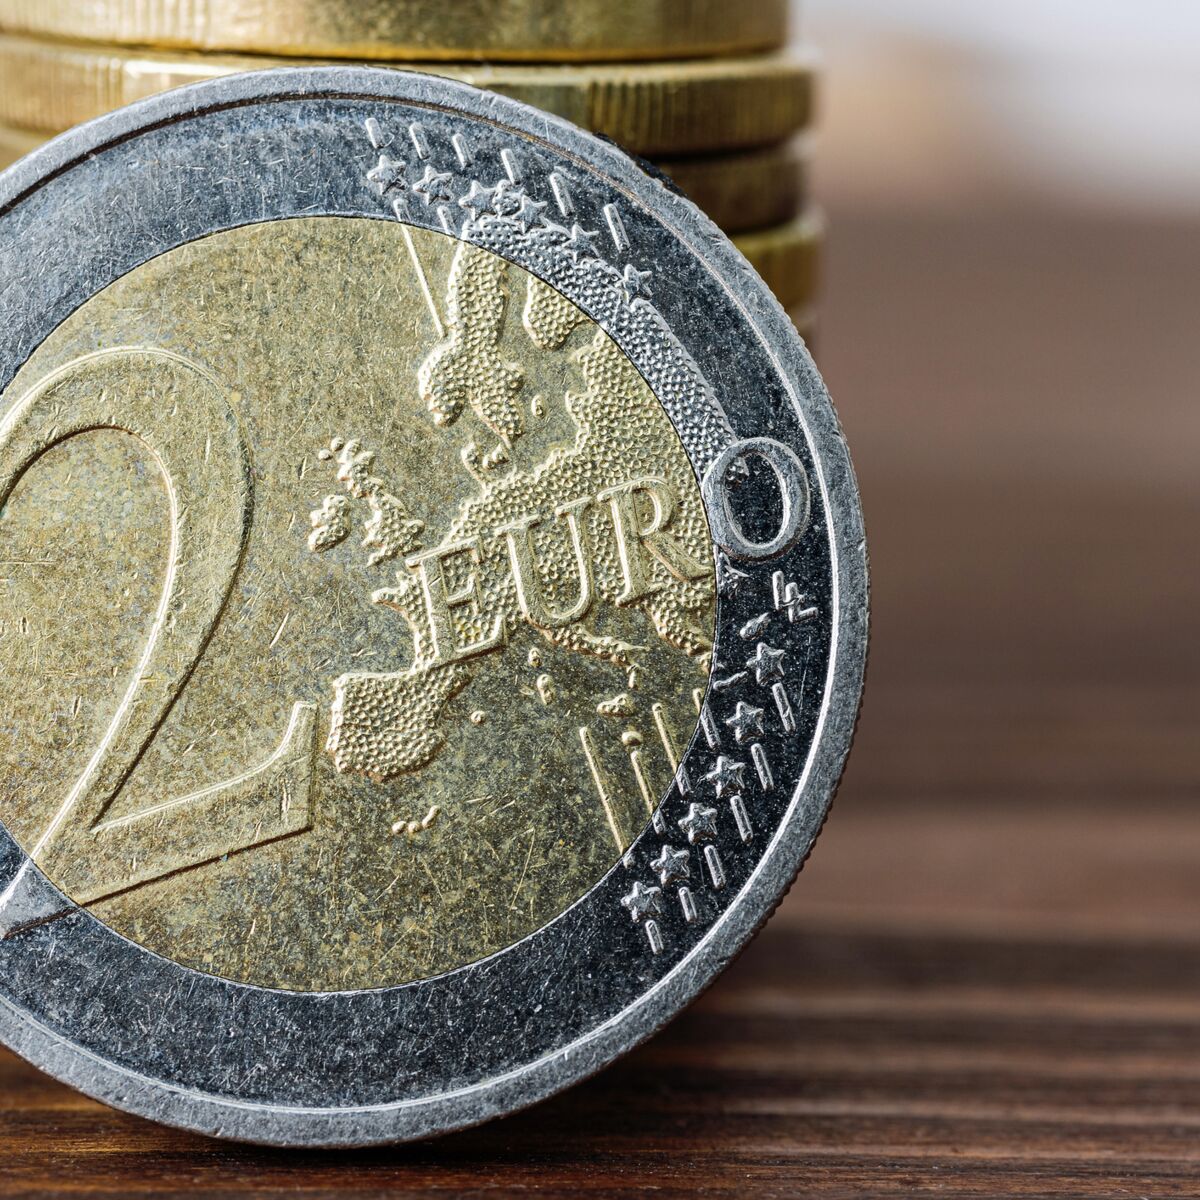 Vérifiez votre porte-monnaie : ces pièces de 2 euros rares valent